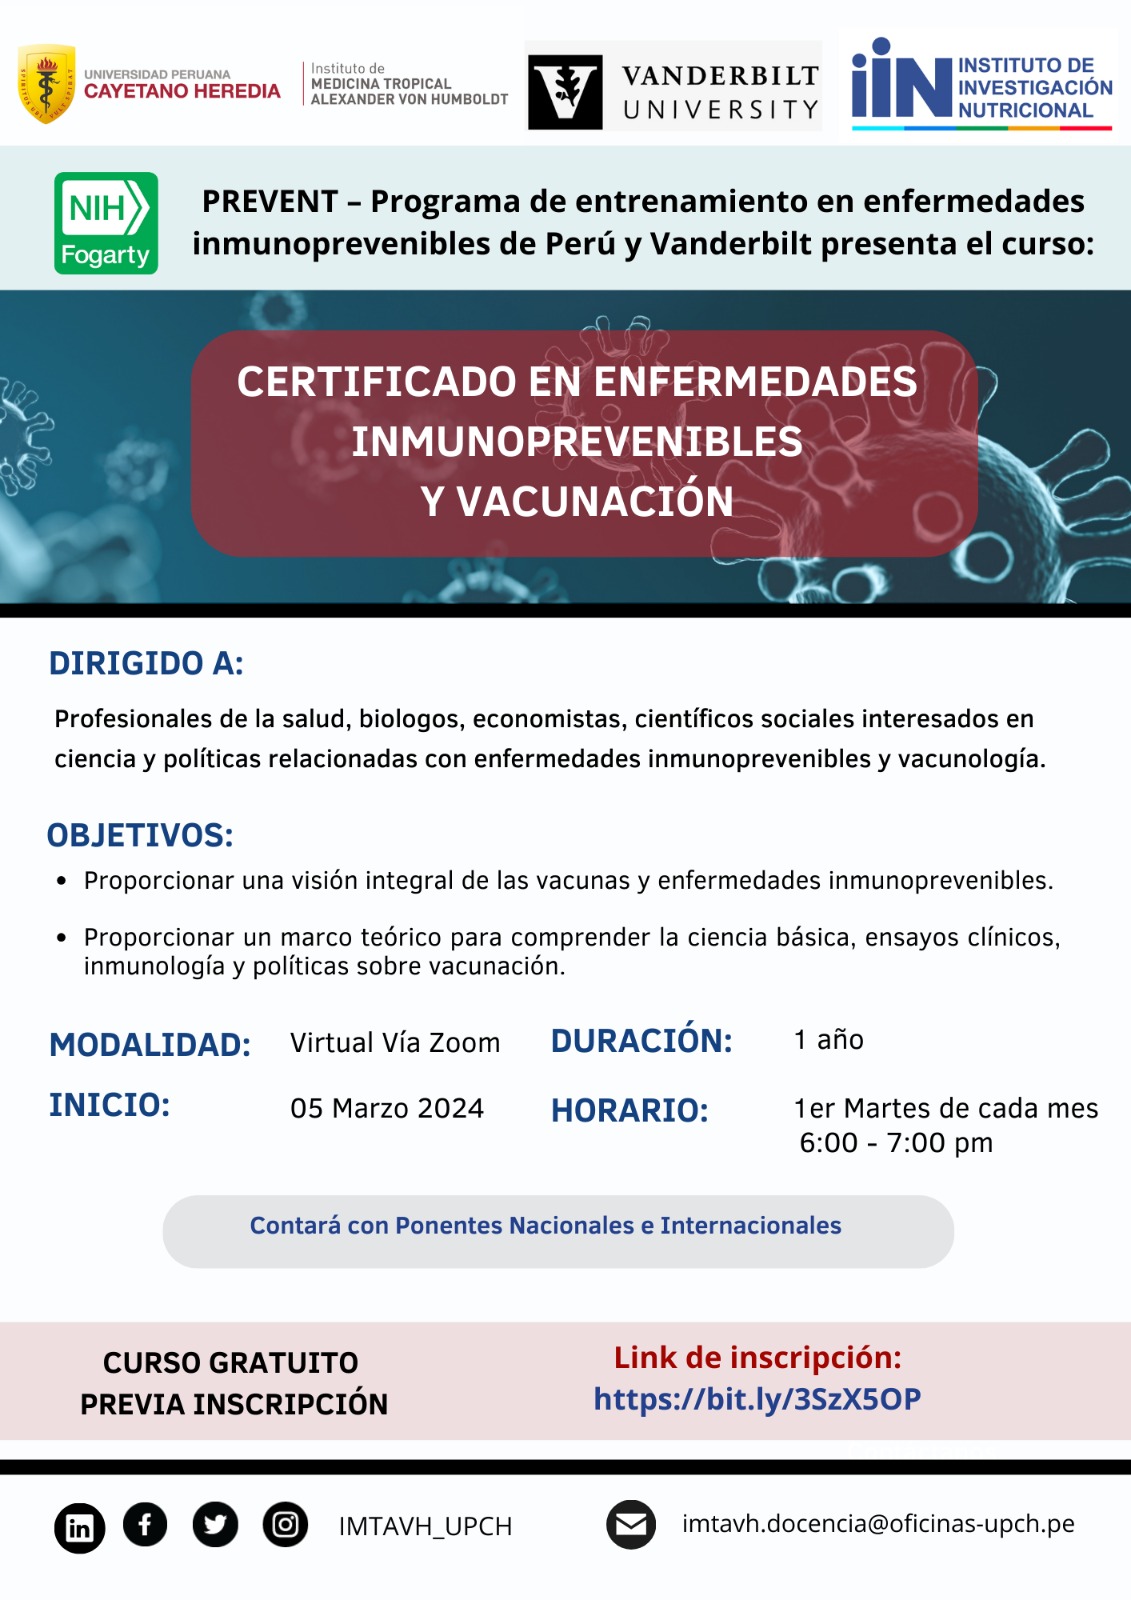 Inauguración del Certificado en Enfermedades Inmunoprevenibles y Vacunación 2024